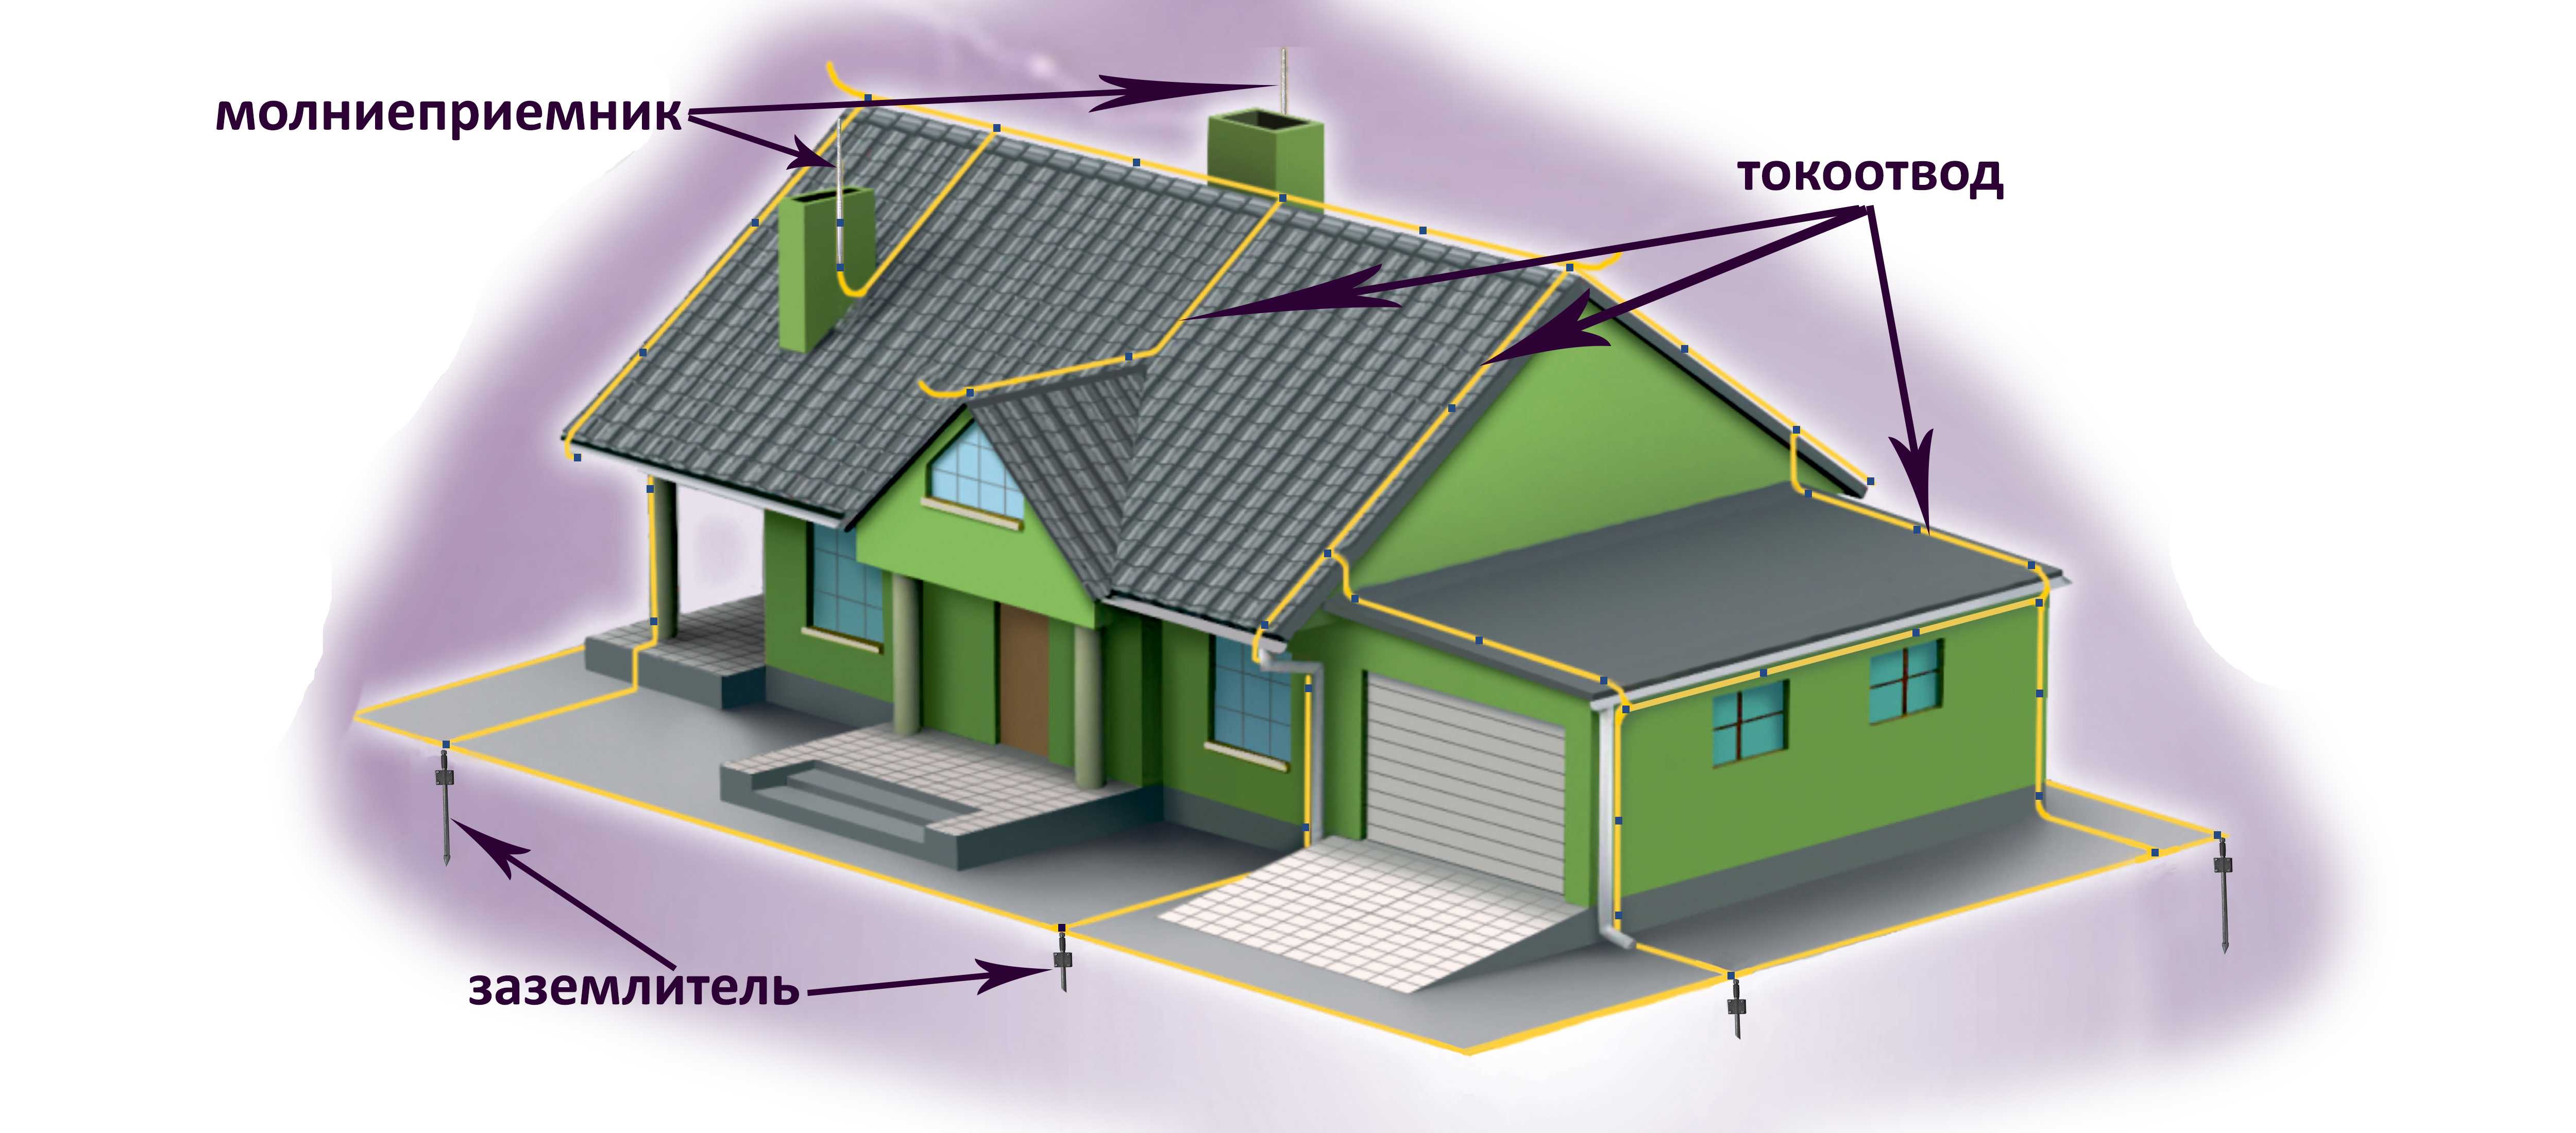 Молниезащита и заземление дома с металлической крышей